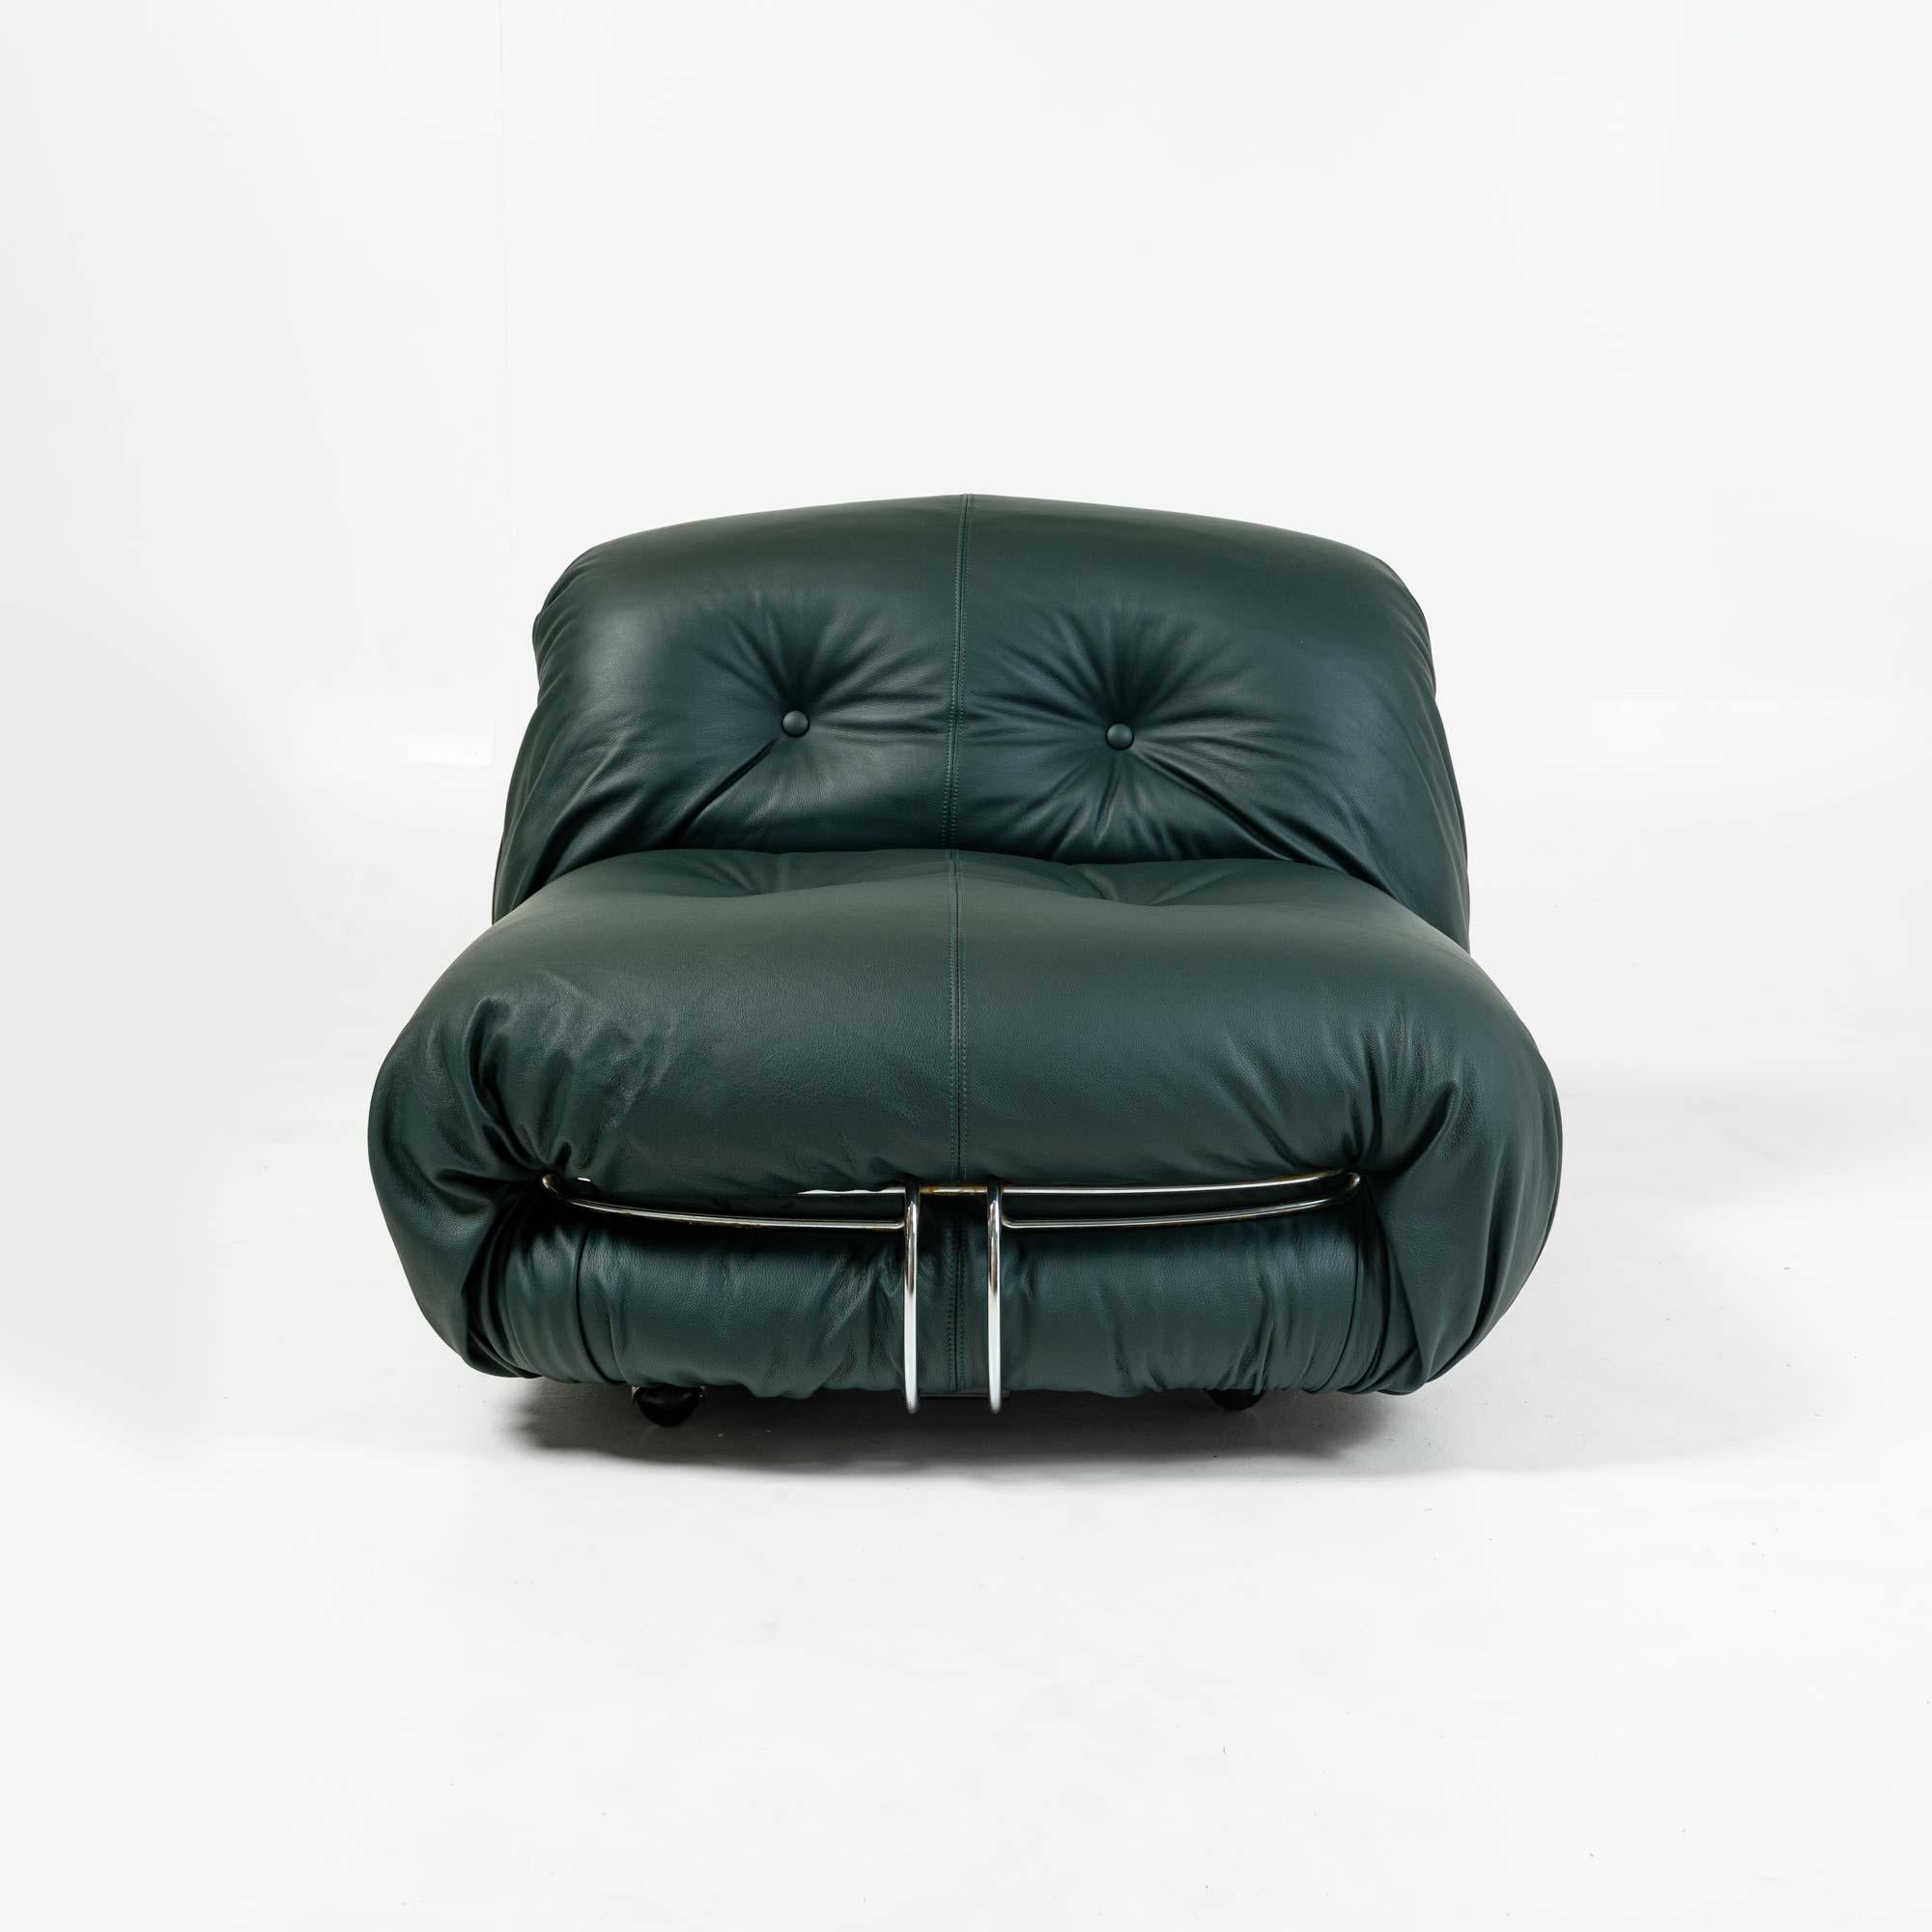 Dies ist ein seltener Soriana Sessel in kürzlich neu gepolstert in Elmo Midnight Green Leder, entworfen von Afra und Tobia Scarpa und hergestellt von Cassina in den 1970er Jahren. Das Leder ist weich und dezent. Jeder Stuhl hat noch zwei originale